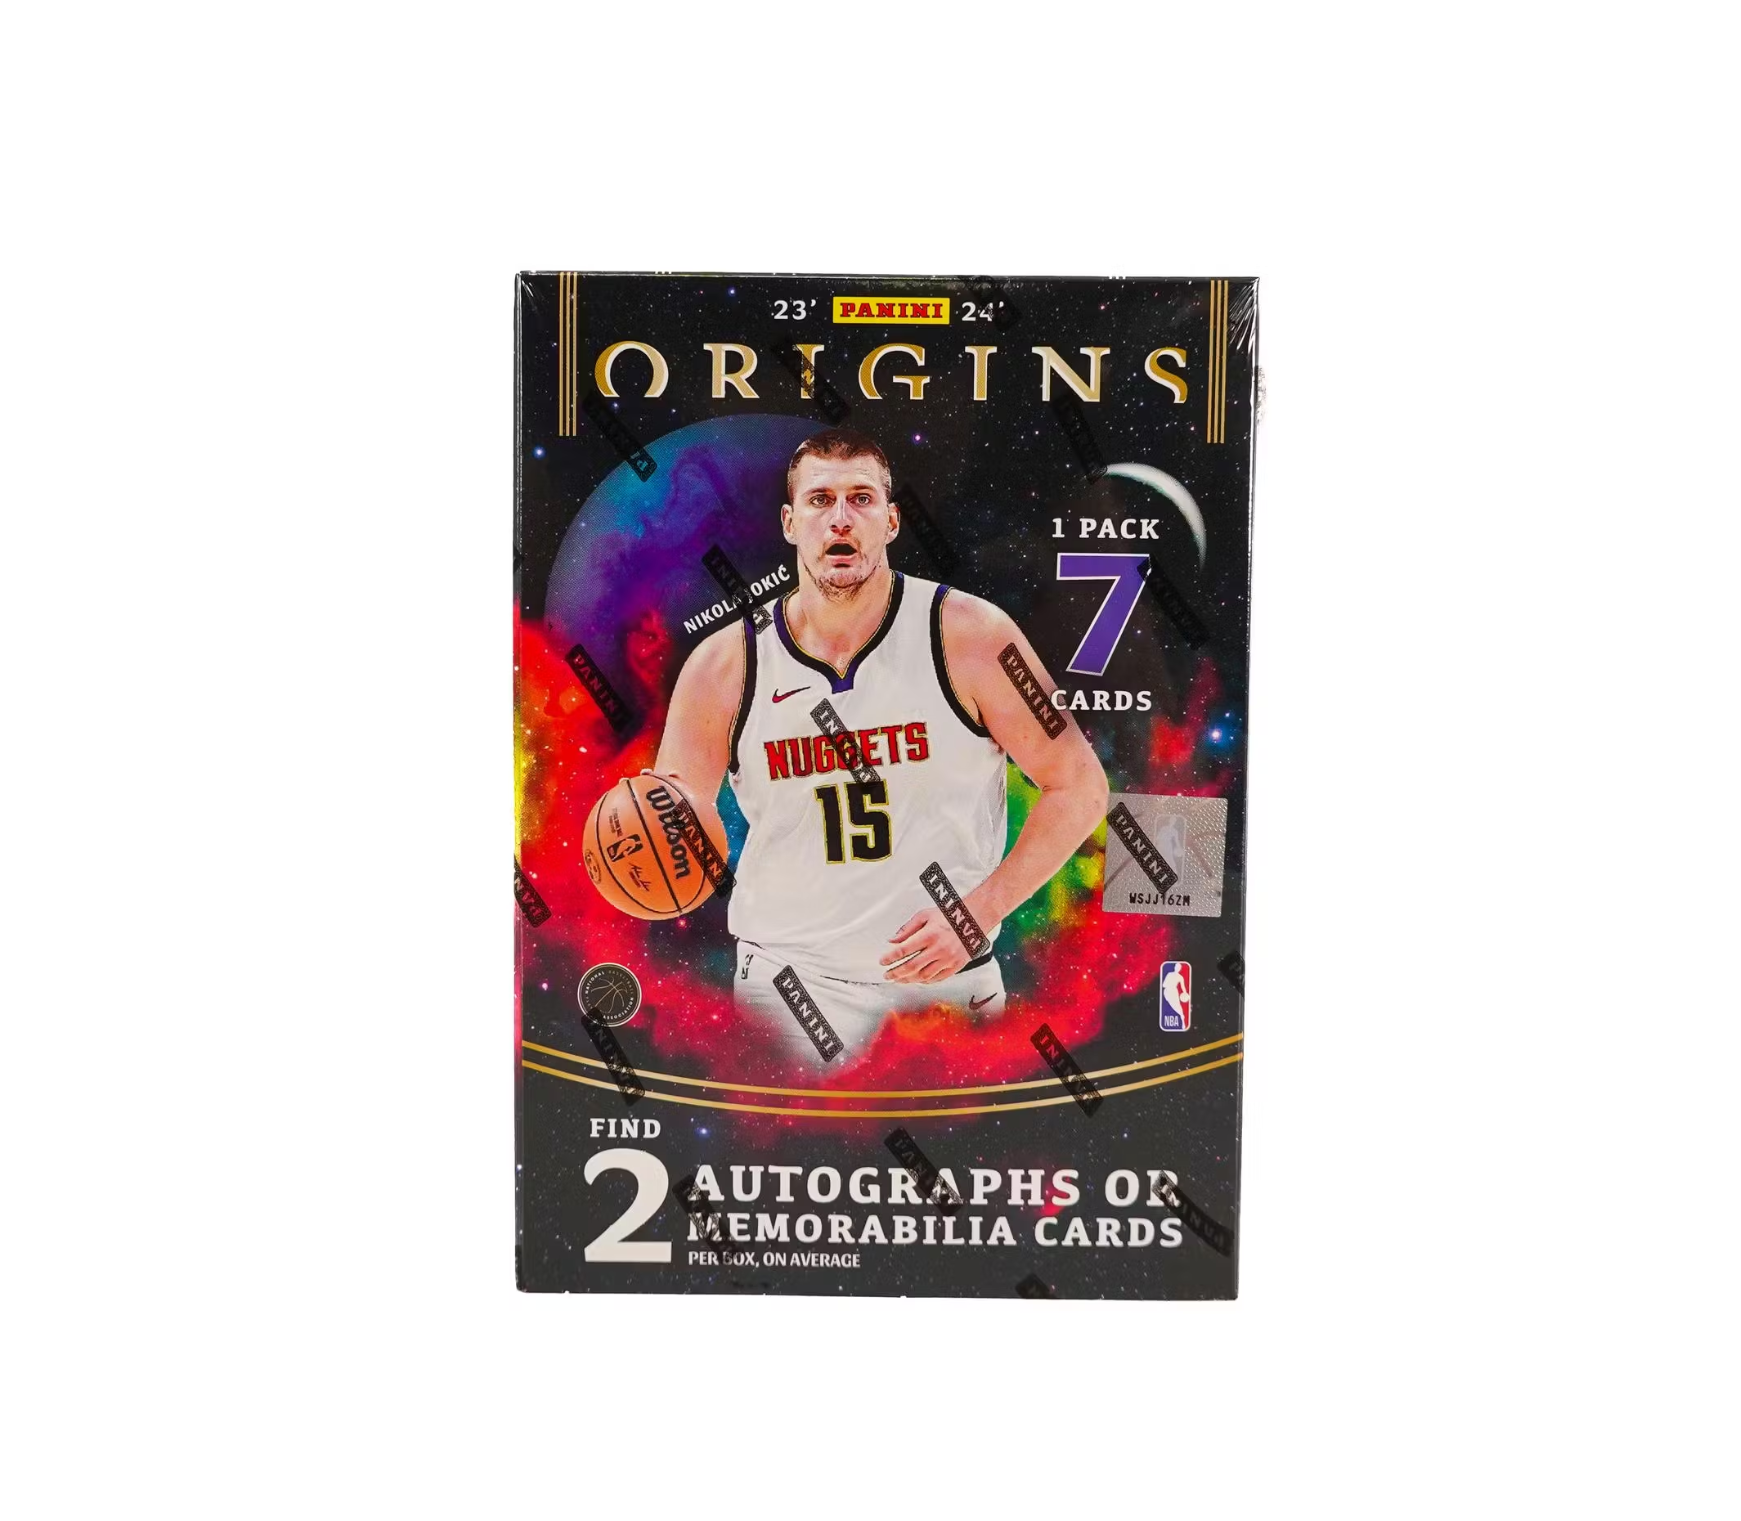 2023-24 Panini Origins Basketball Hobby 12-Box Case